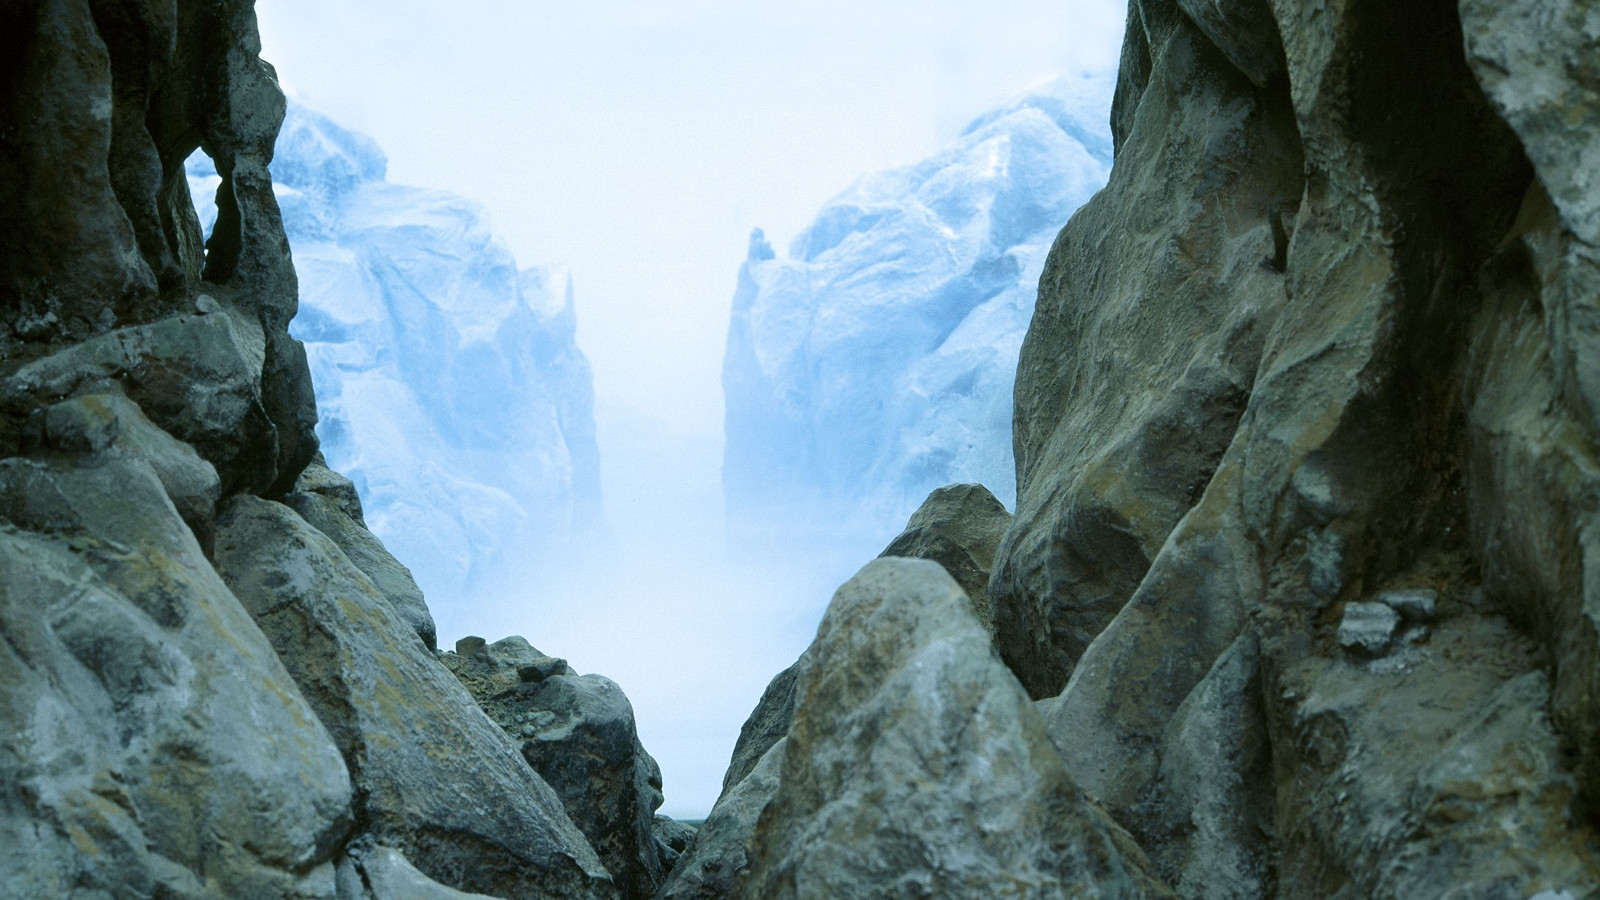 Kuvassa on Mariele Neudeckerin teos, jossa on kallioiden välissä oleva toinen kallionäkymä. Kuva on siniharmaan sävyinen.